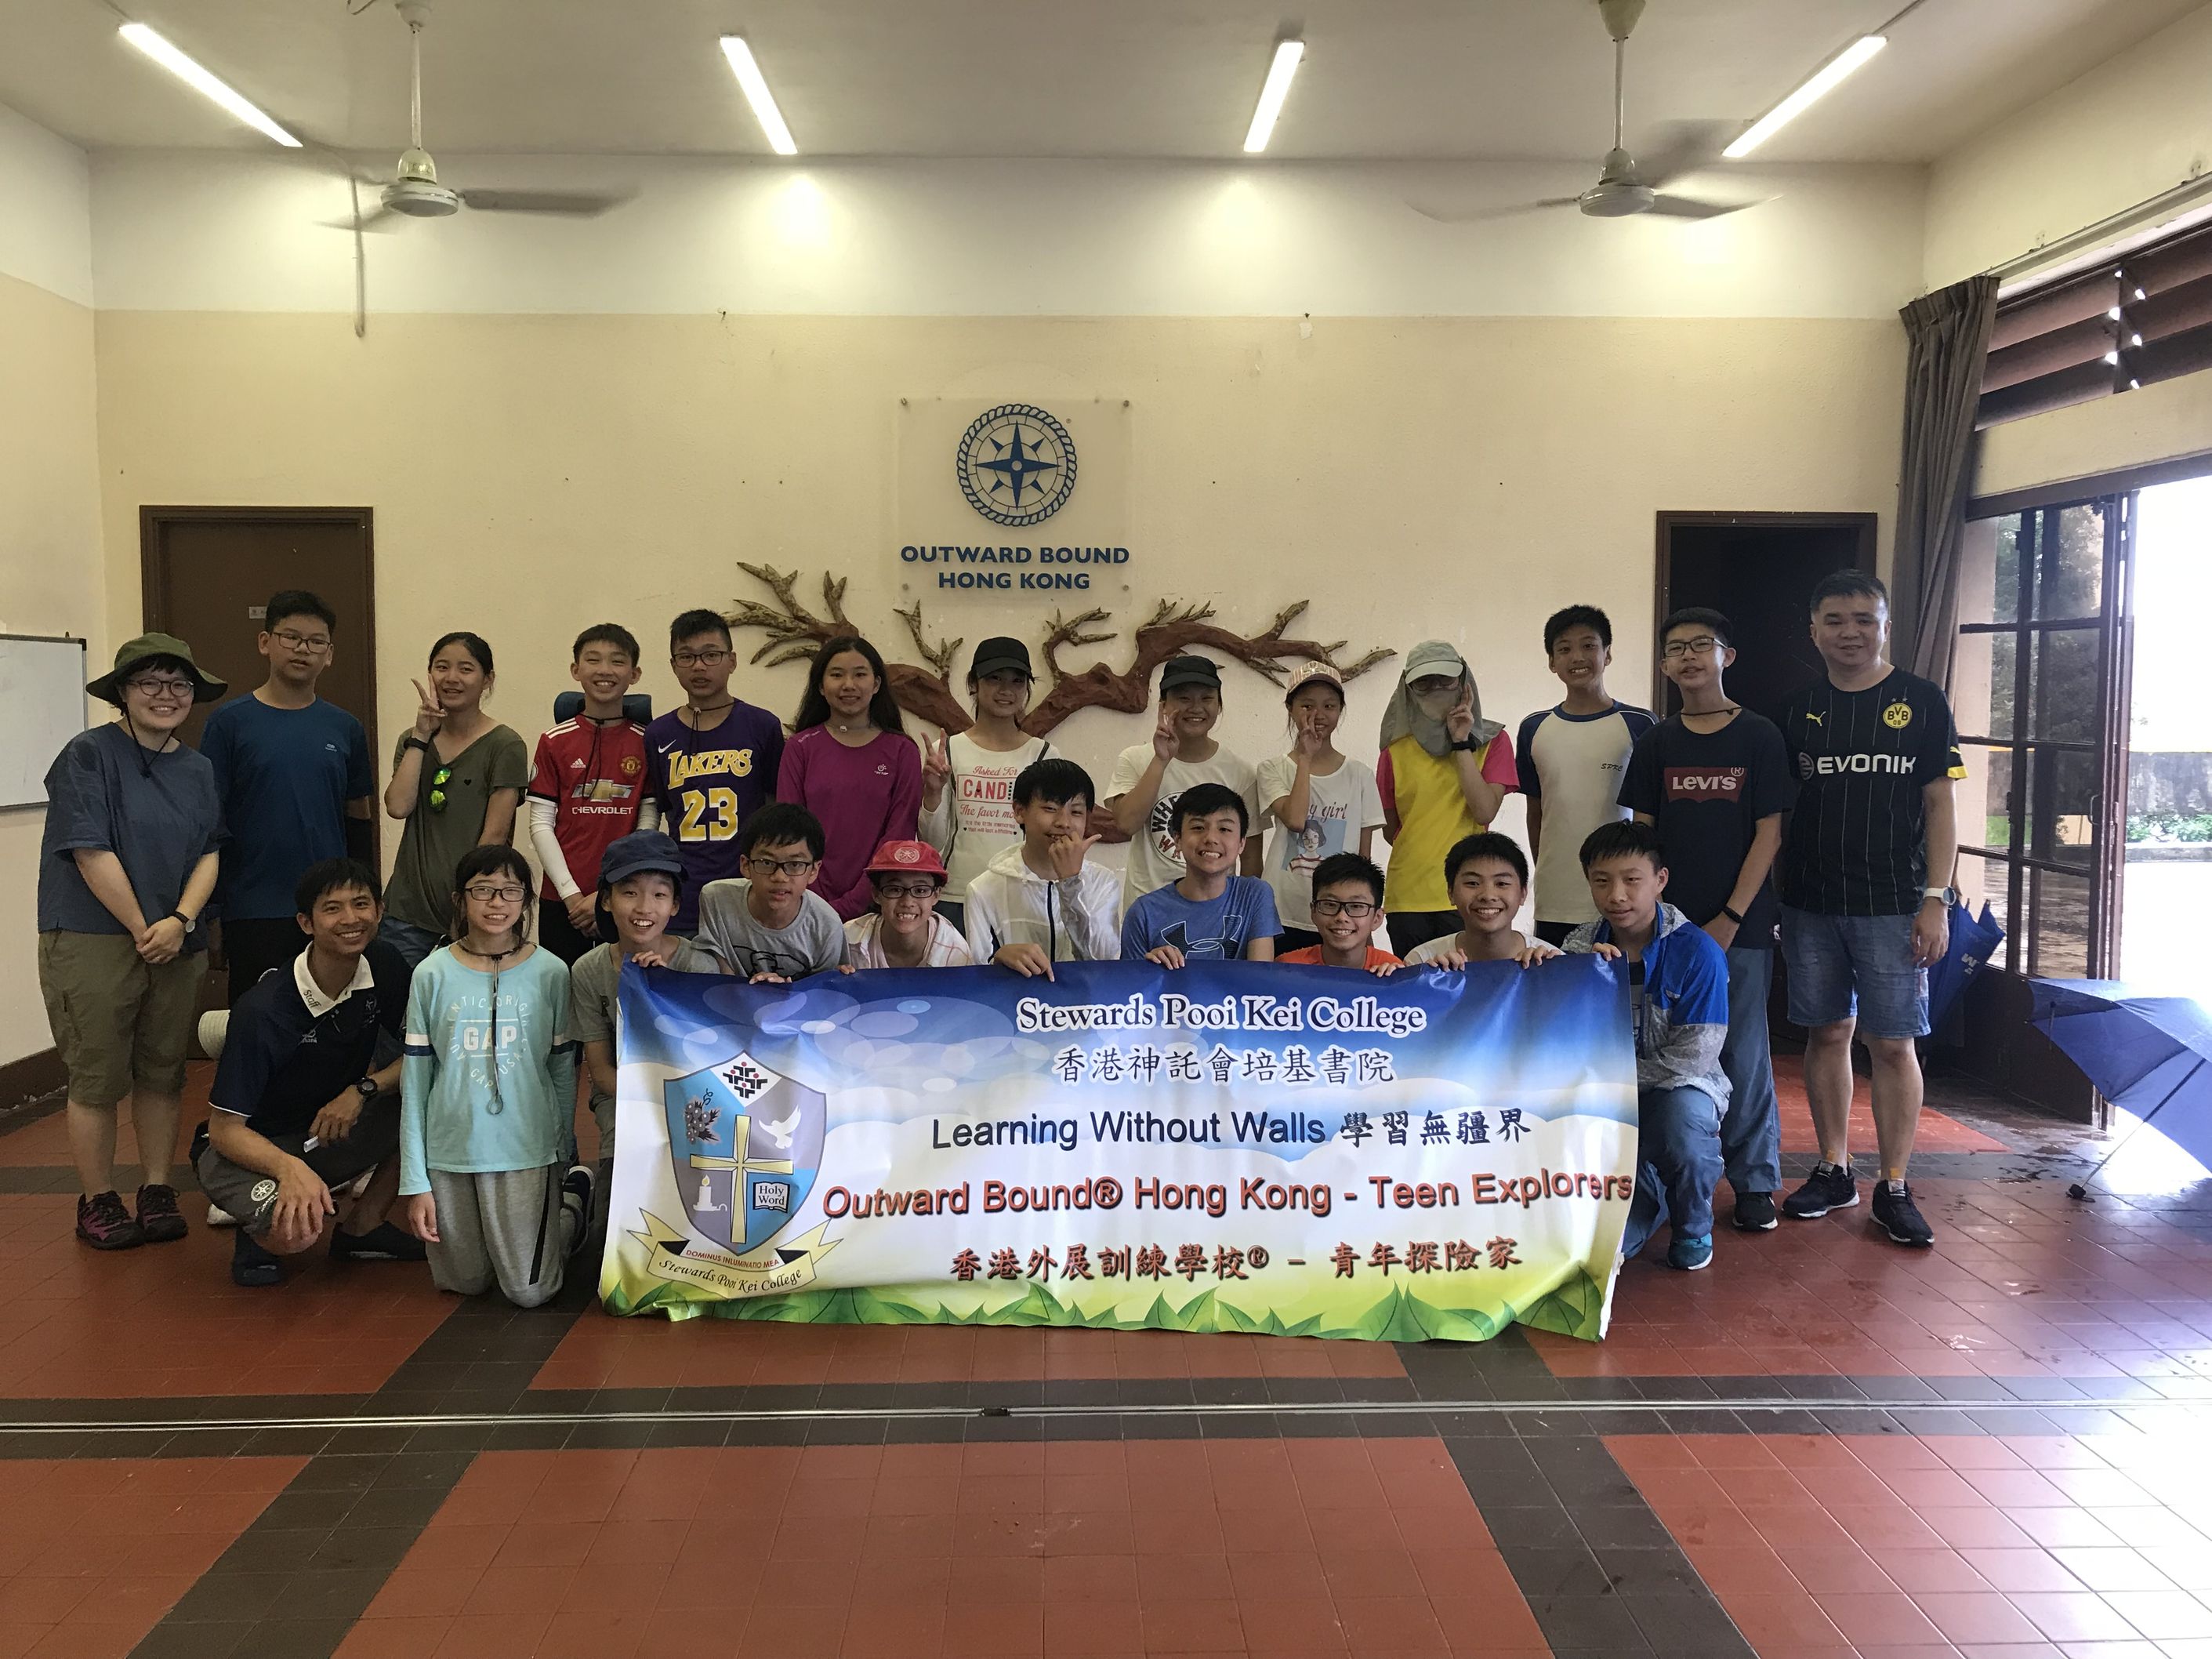 Outward Bound® Hong Kong – Teen Explorers